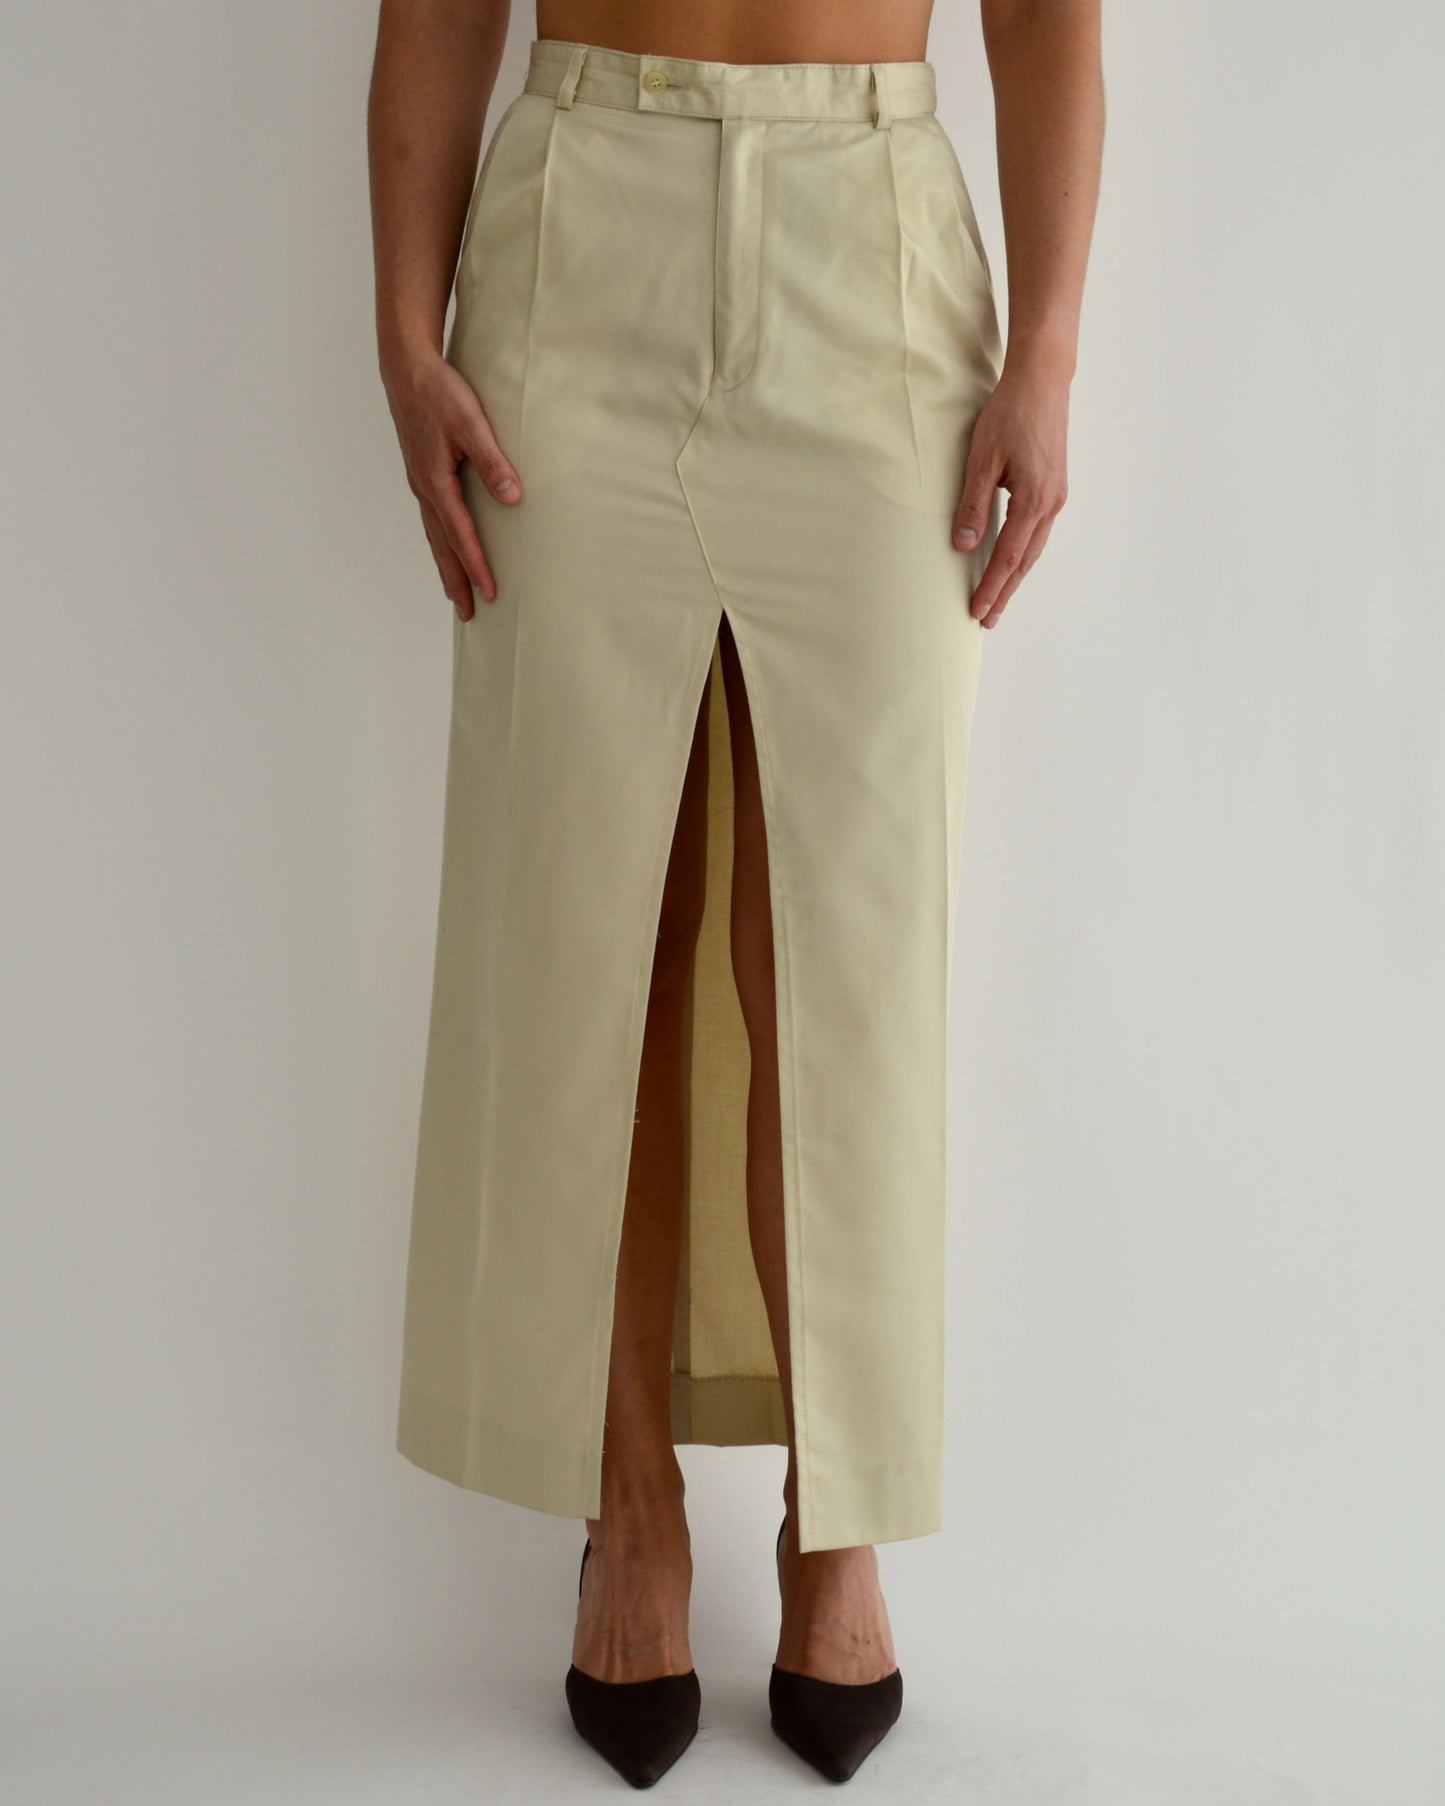 Long Skirt - Soft Beige (S/M)